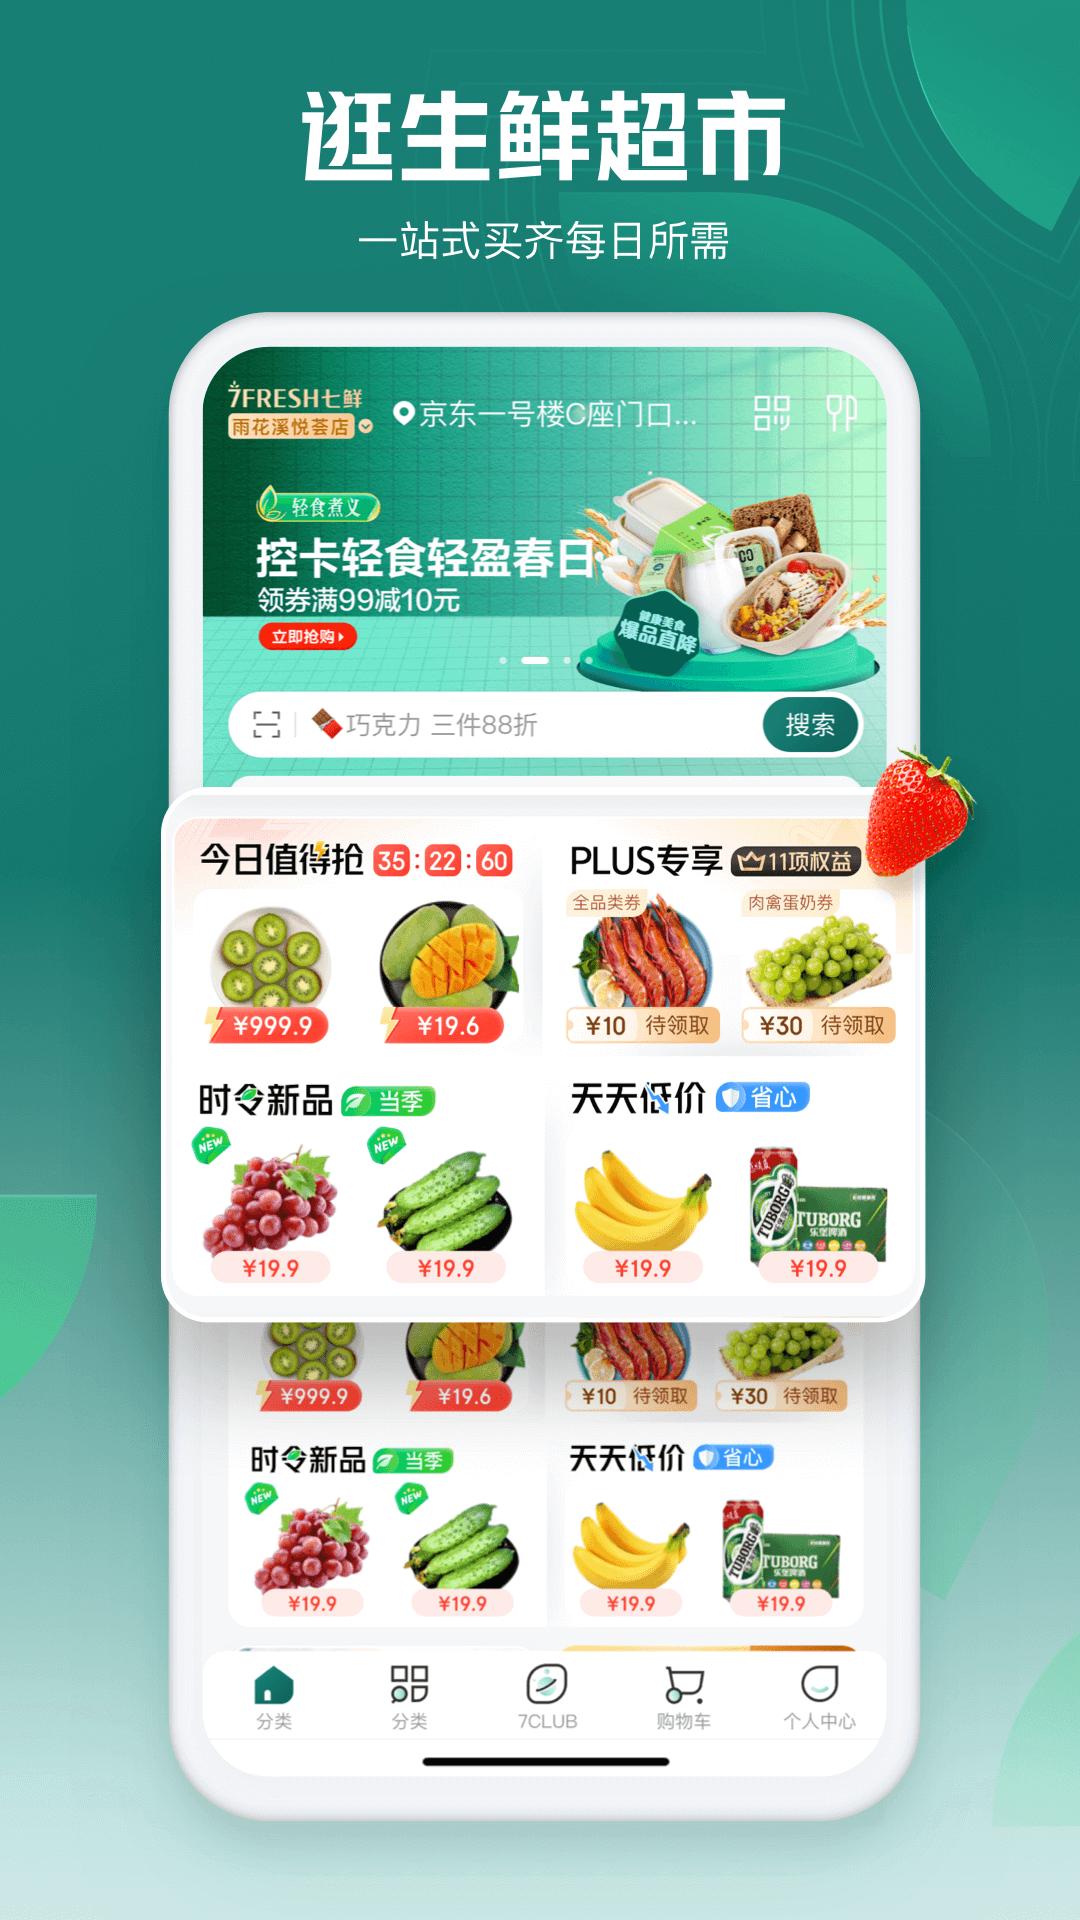 7fresh七鲜生鲜超市 v4.6.8 安卓版0